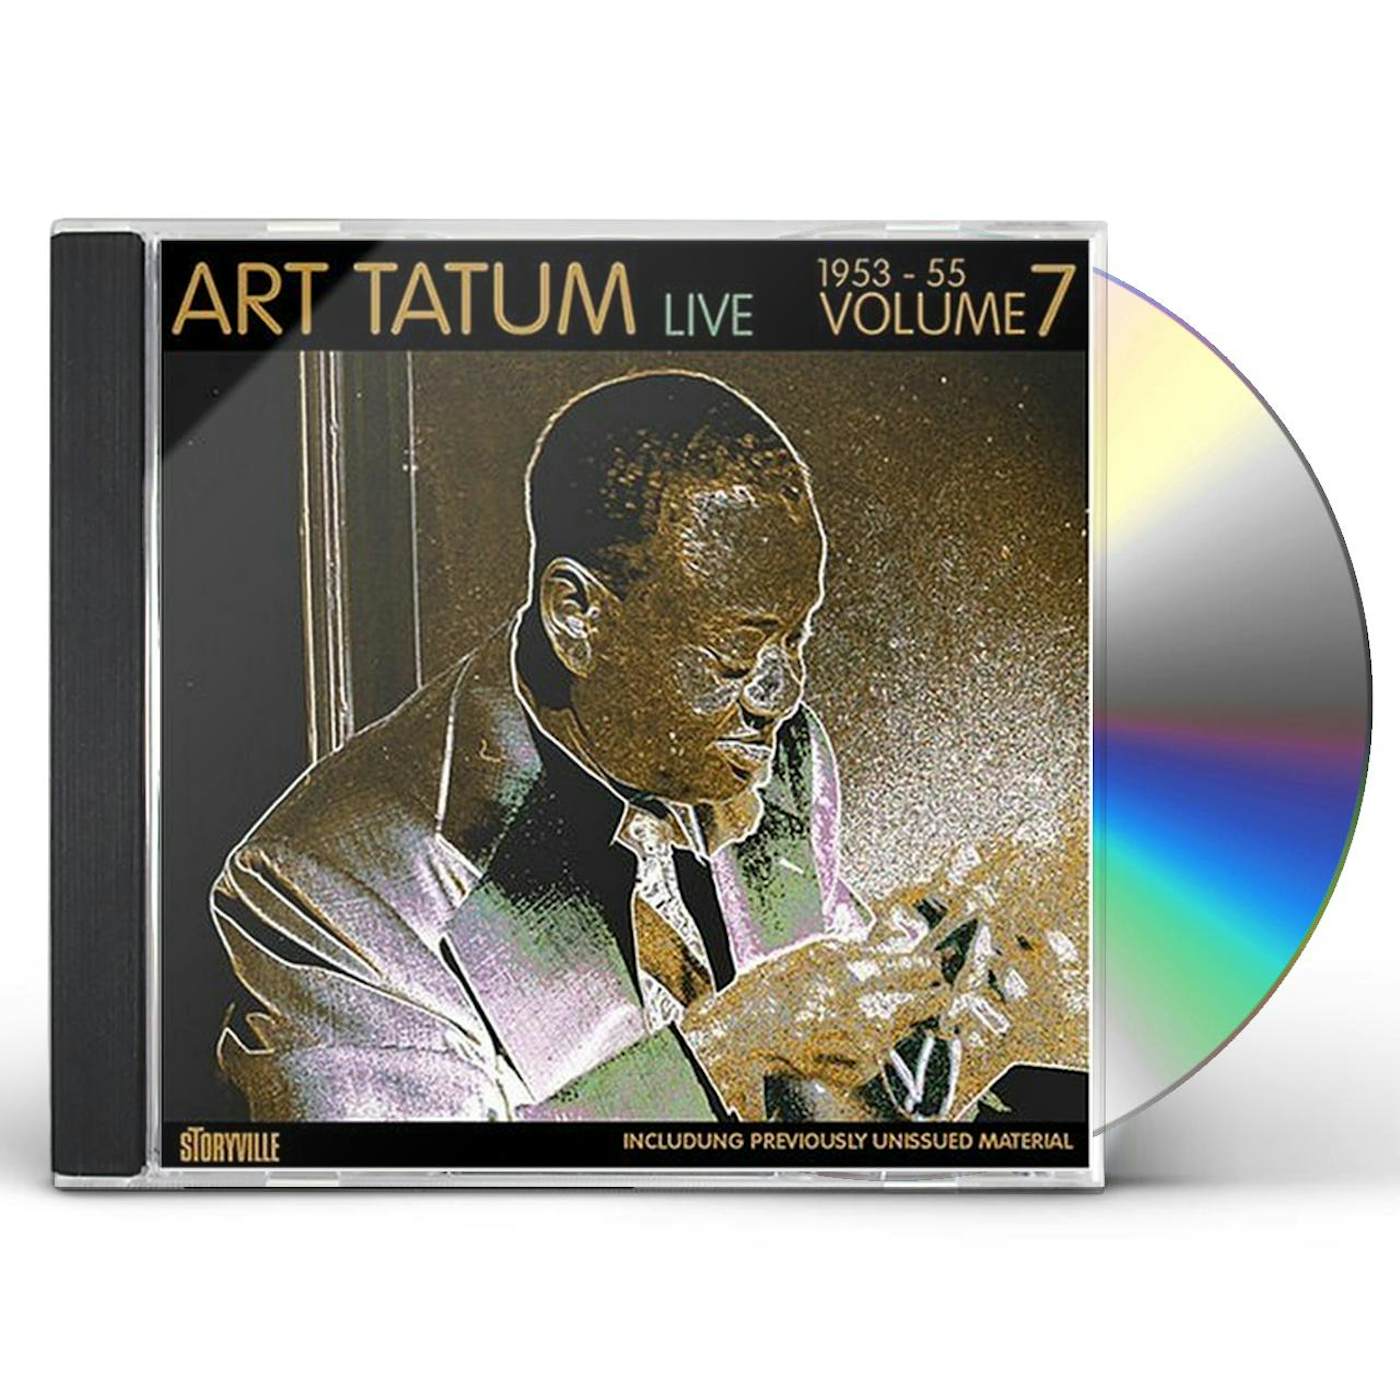 Art Tatum LIVE 1953-55 7 CD